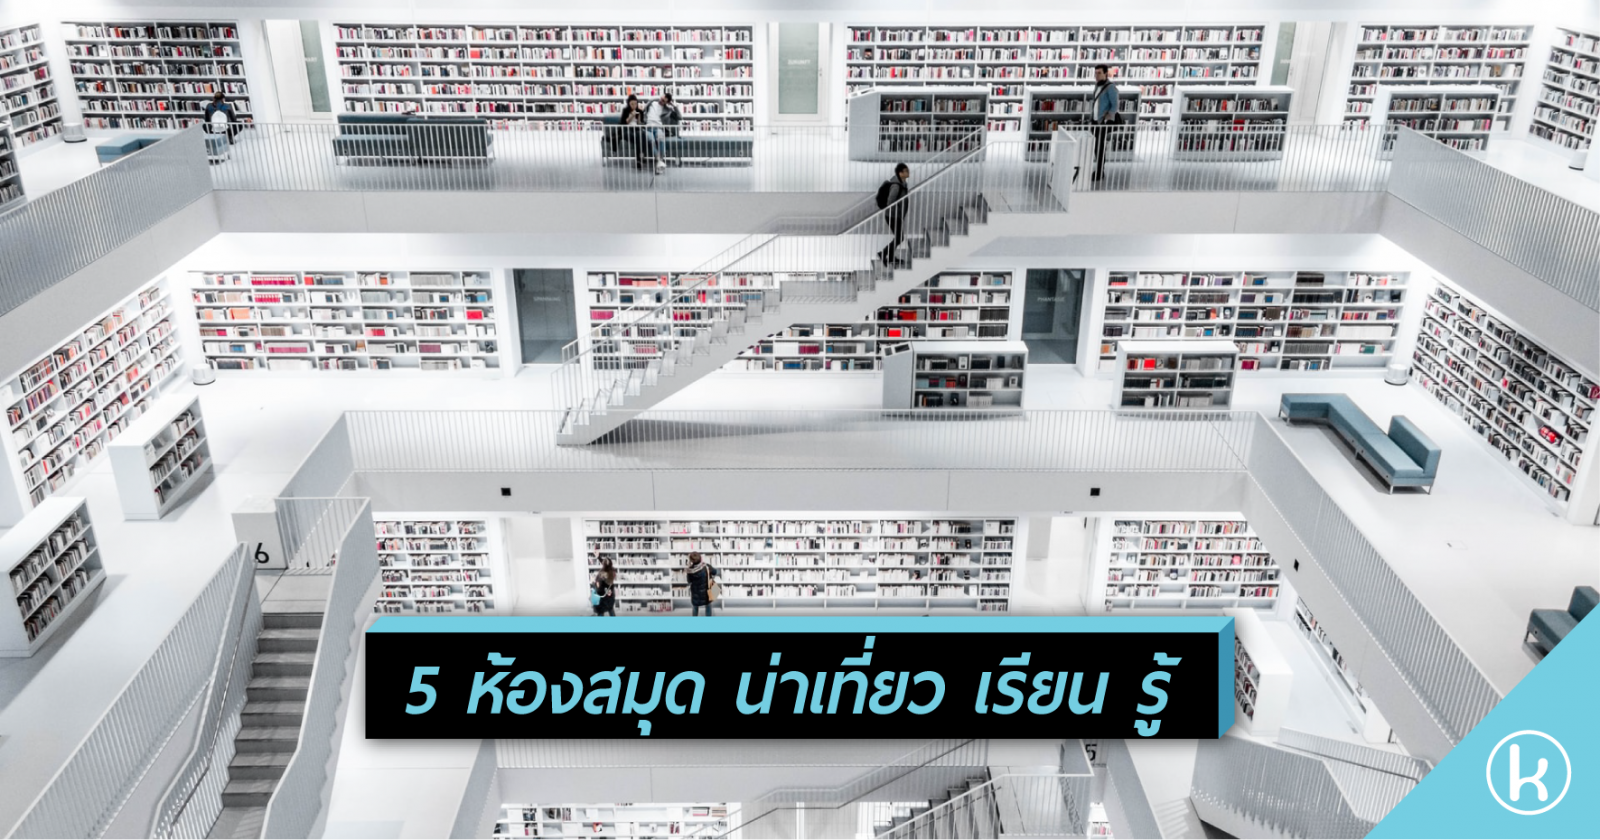 5 ห้องสมุด น่าเที่ยว เรียน รู้